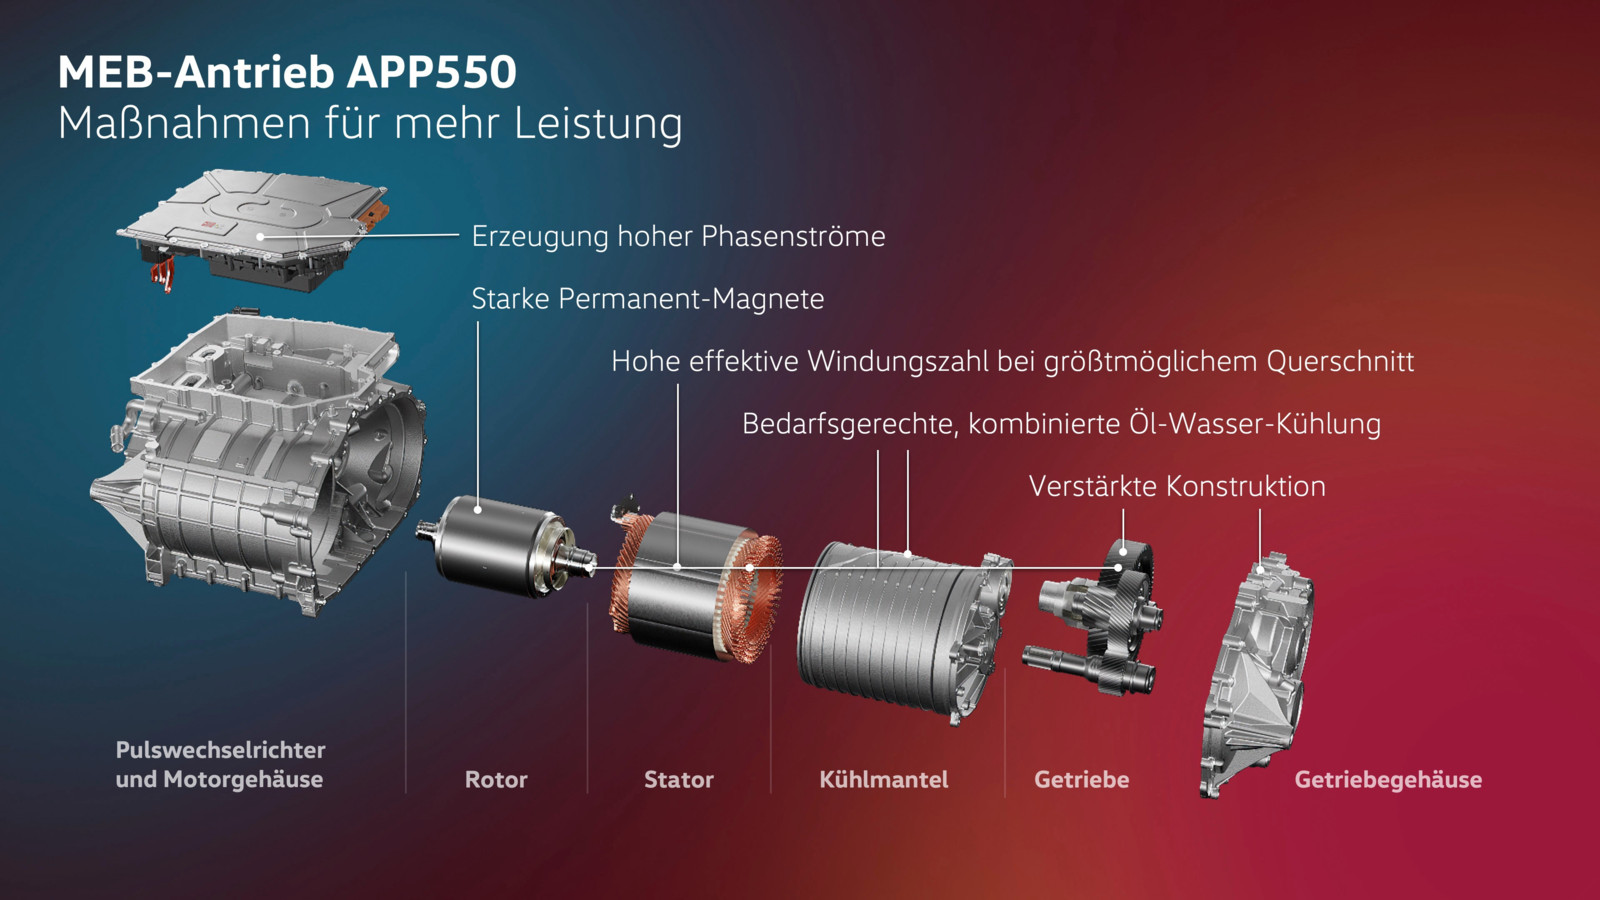 Die auf hohe Leistung getrimmten Komponenten des neuen MEB-Antriebs APP550.